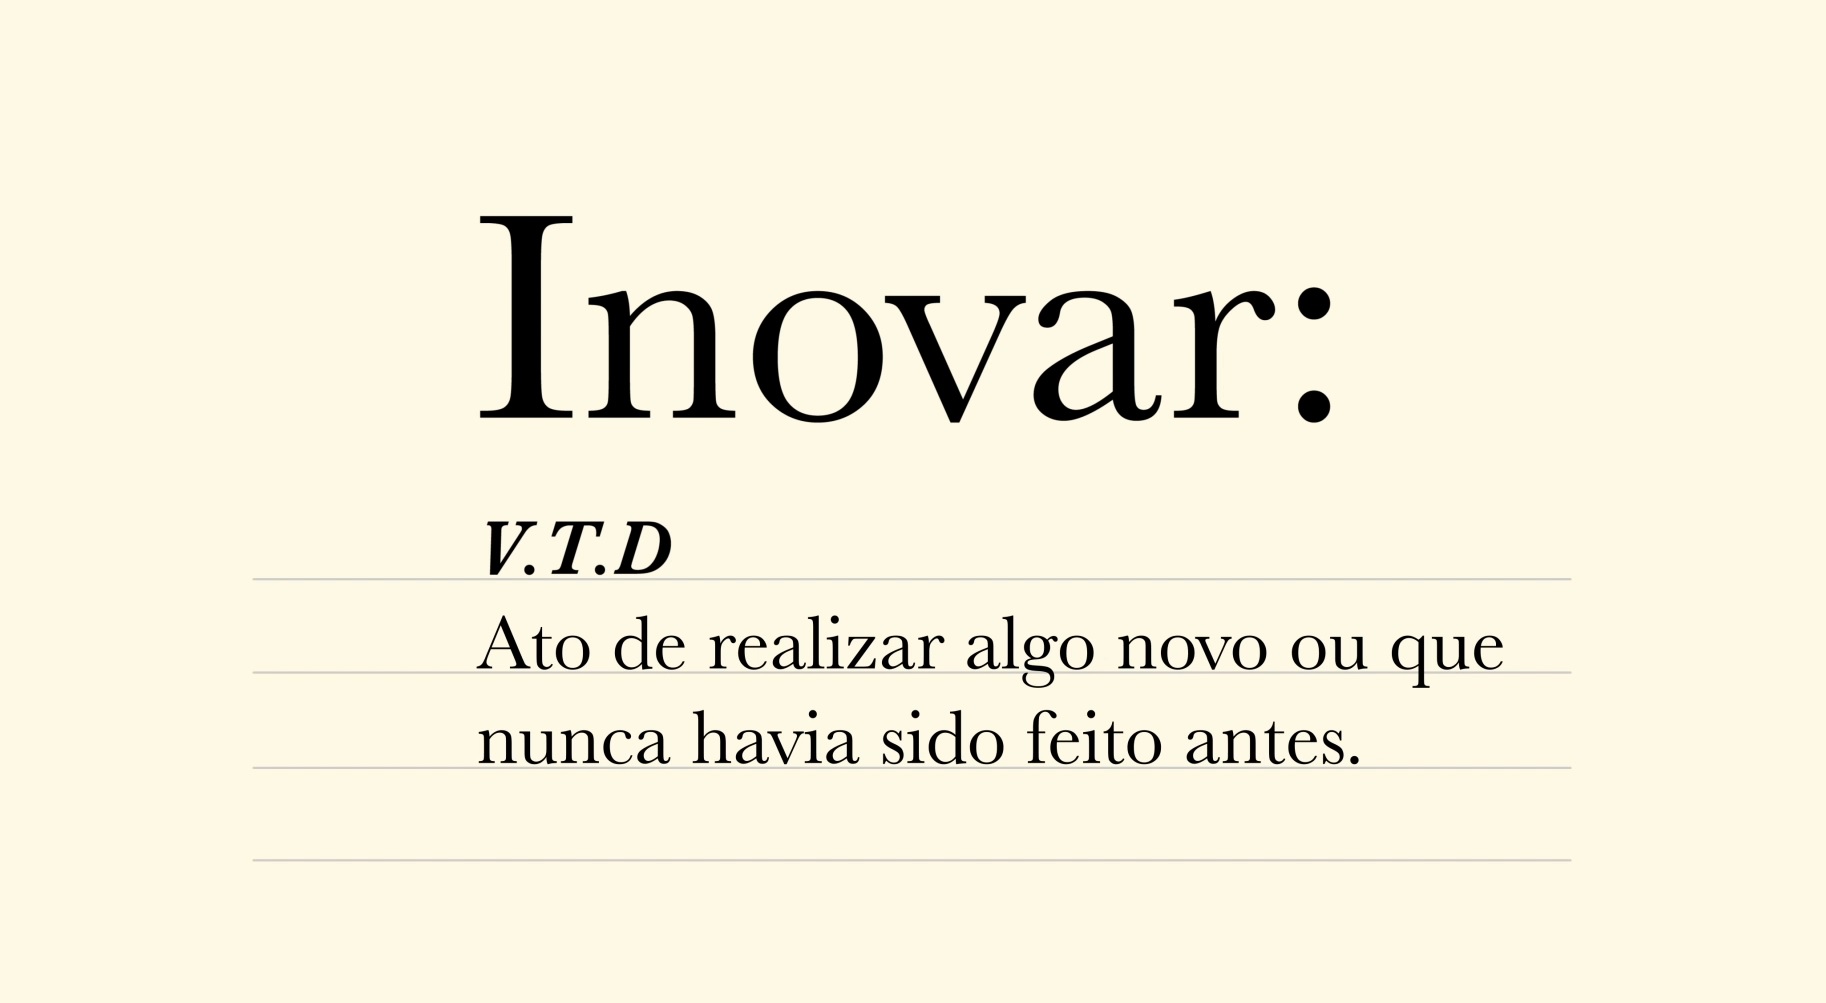 Ilustração com a definição da palavra "inovar" escrita